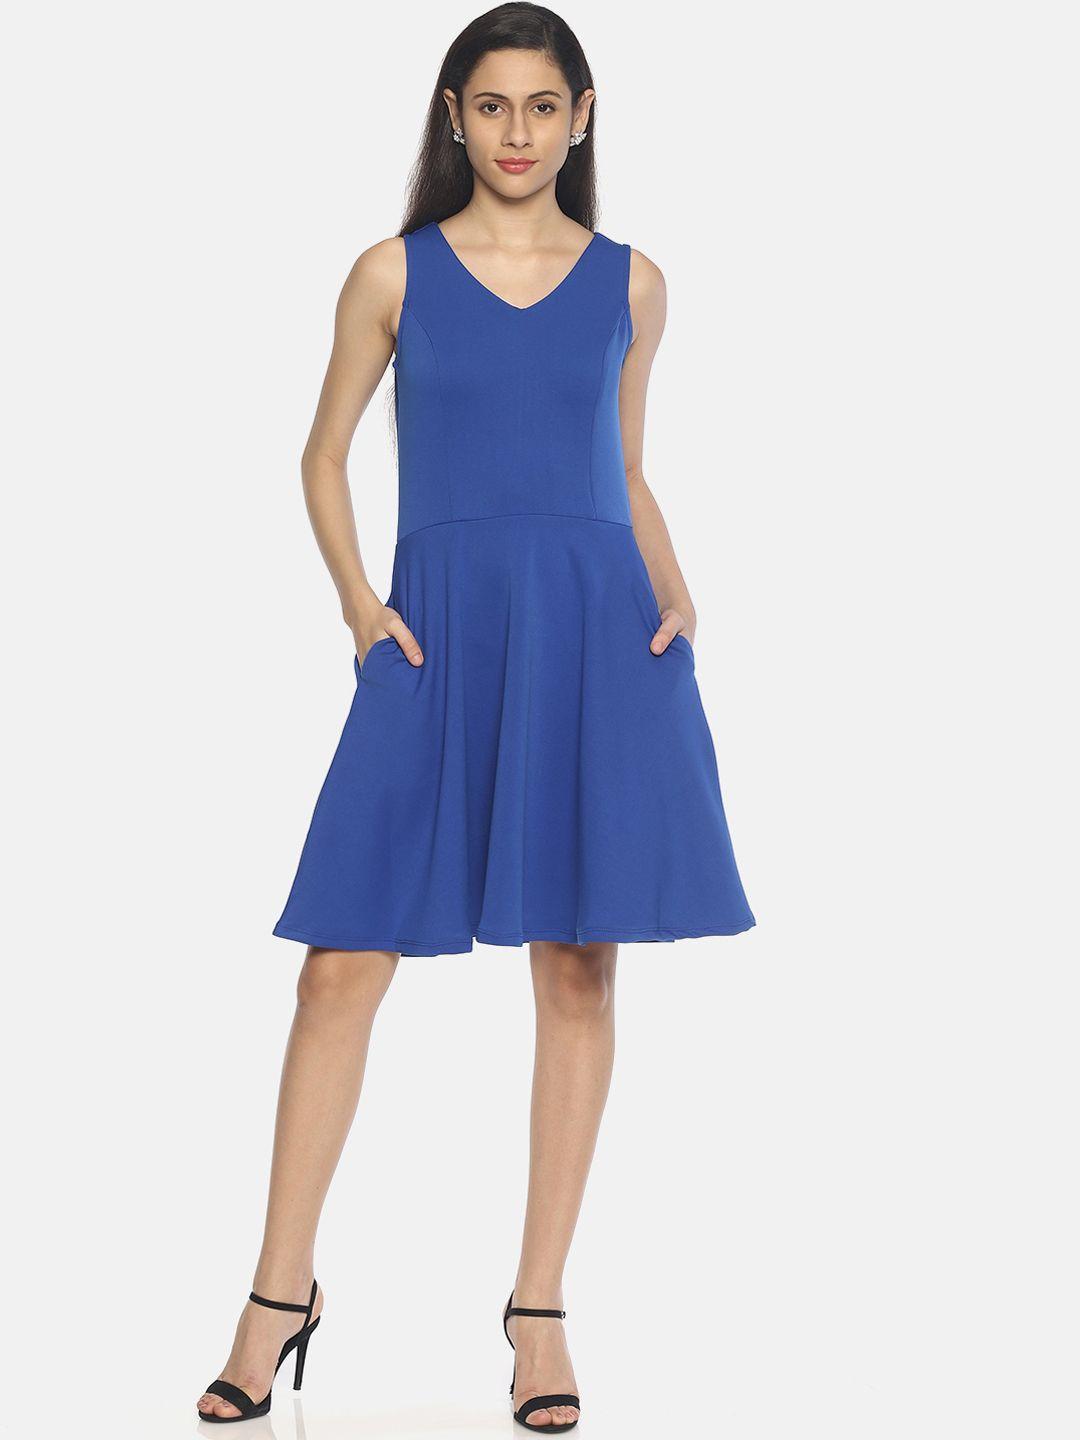 AARA Women Solid Blue A-Line Dress